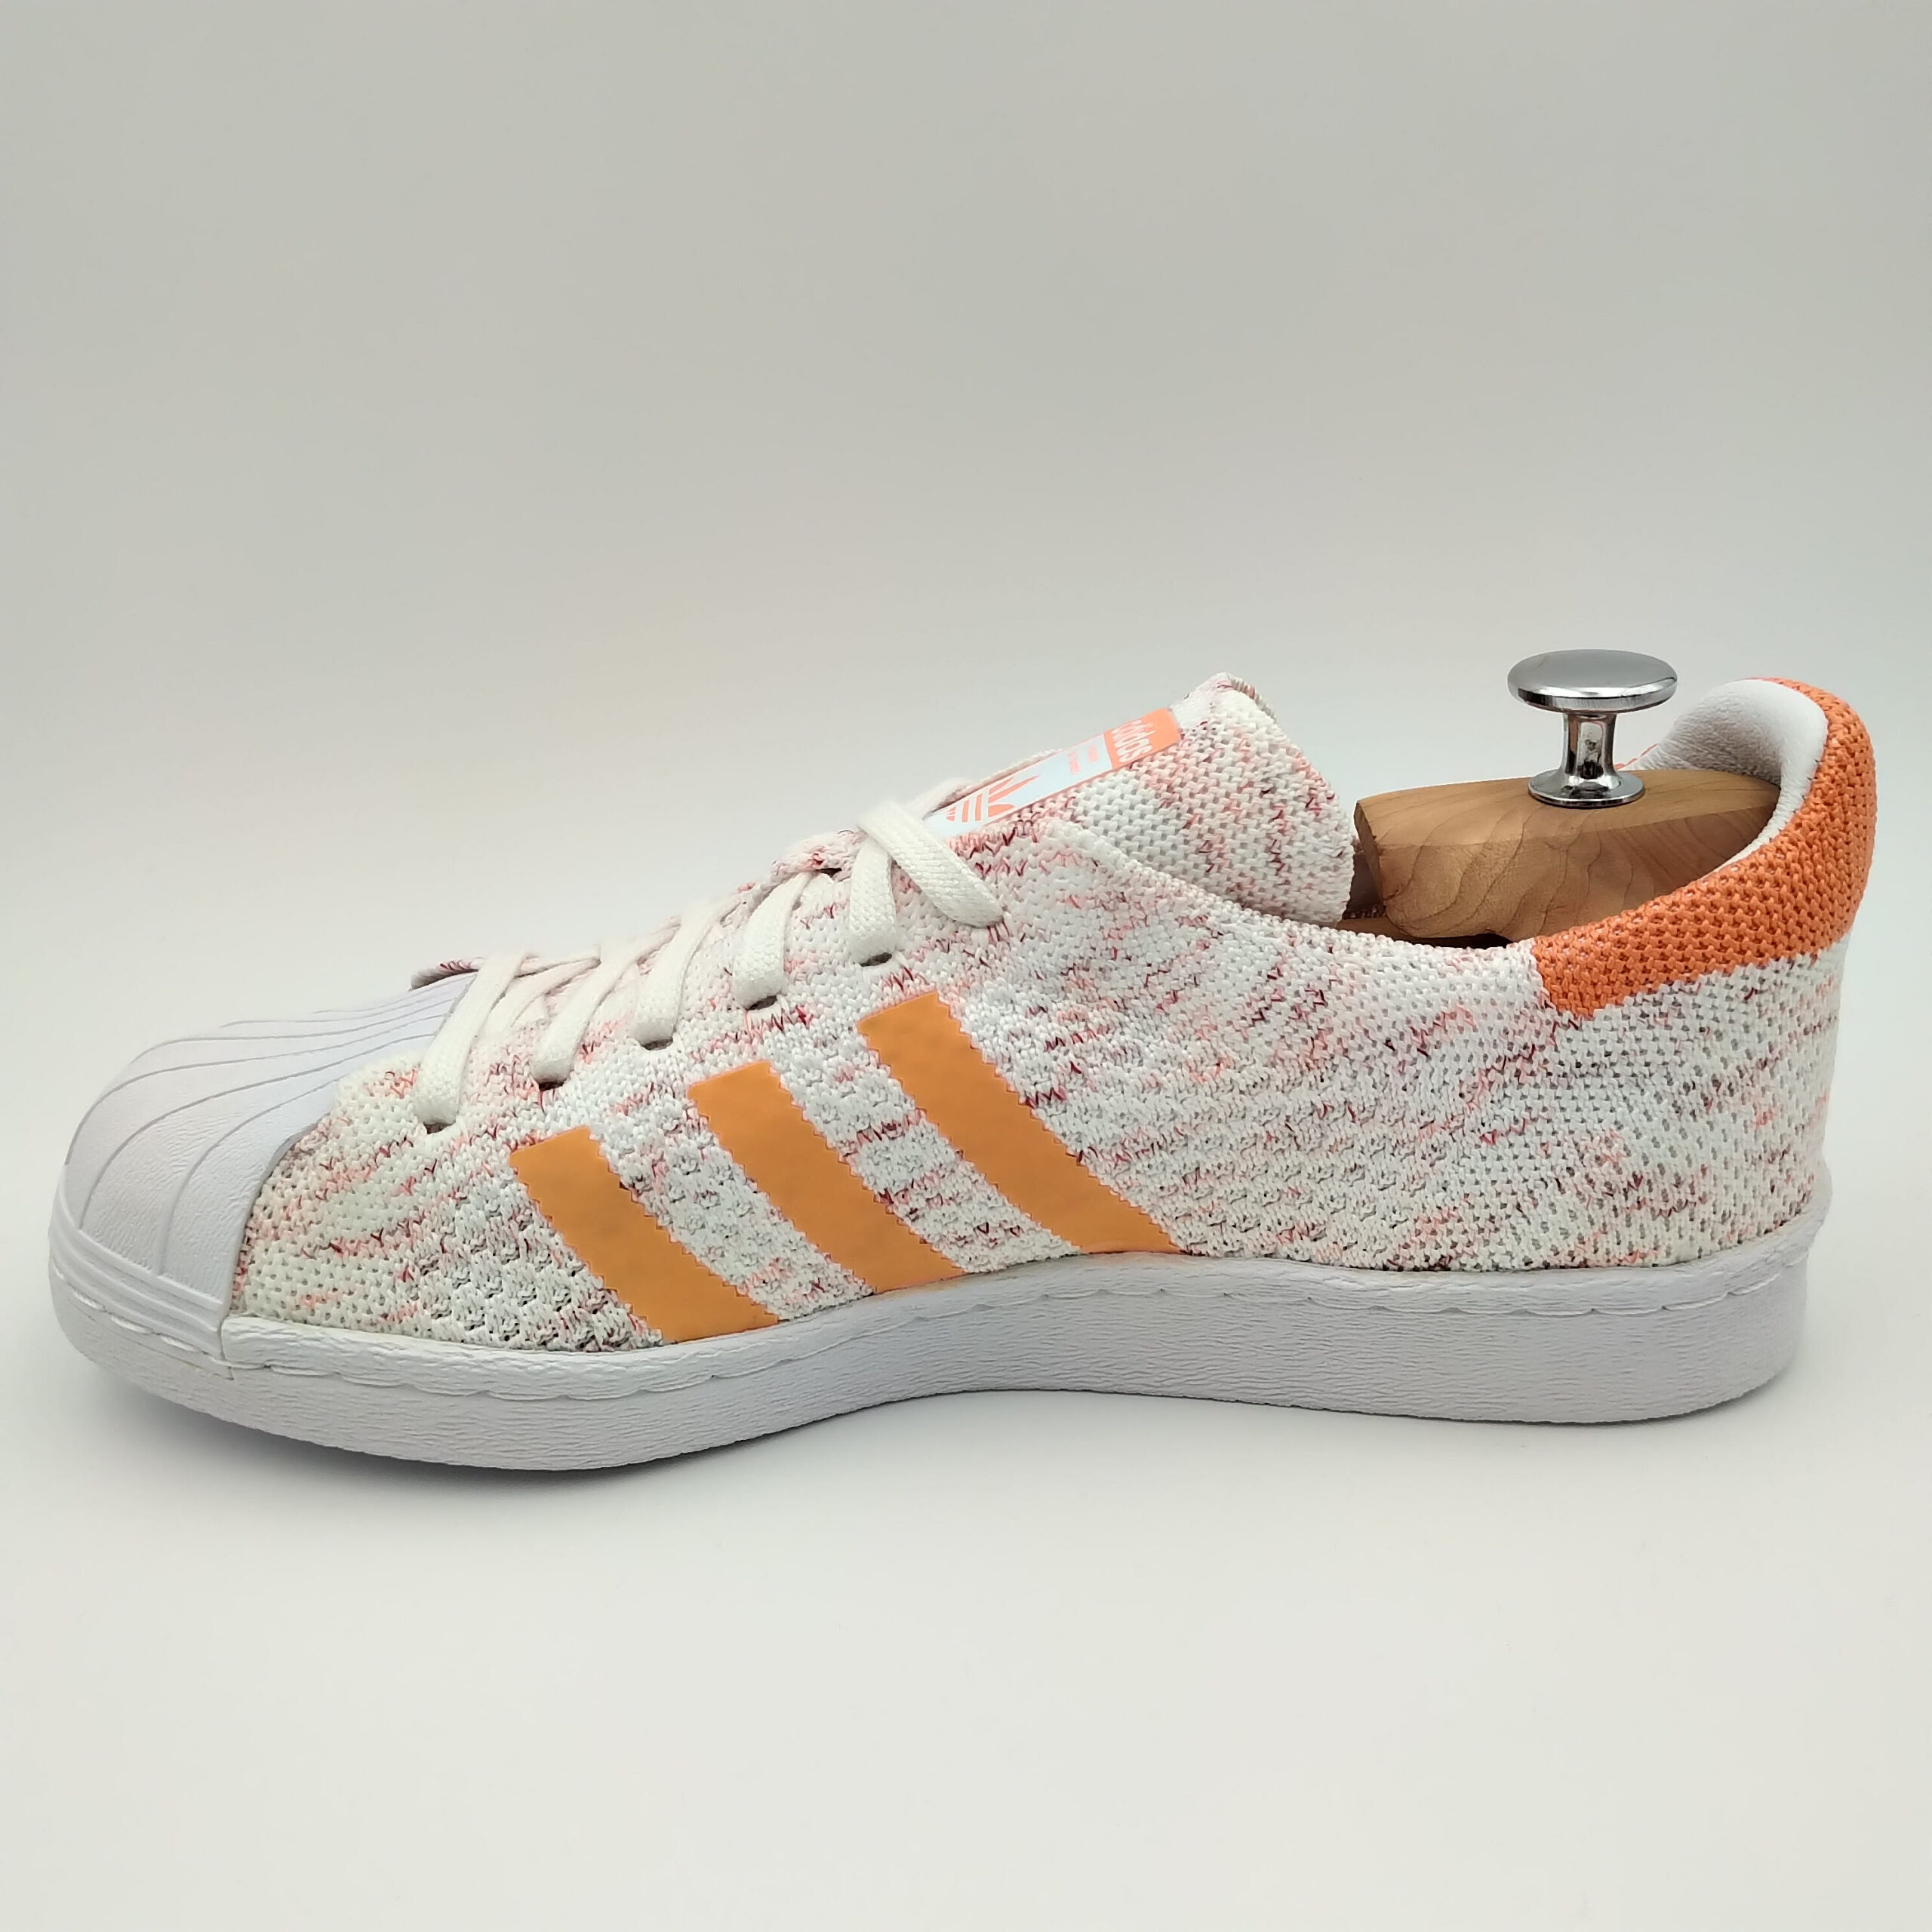 Adidas Superstar 80's Primeknit bandes oranges